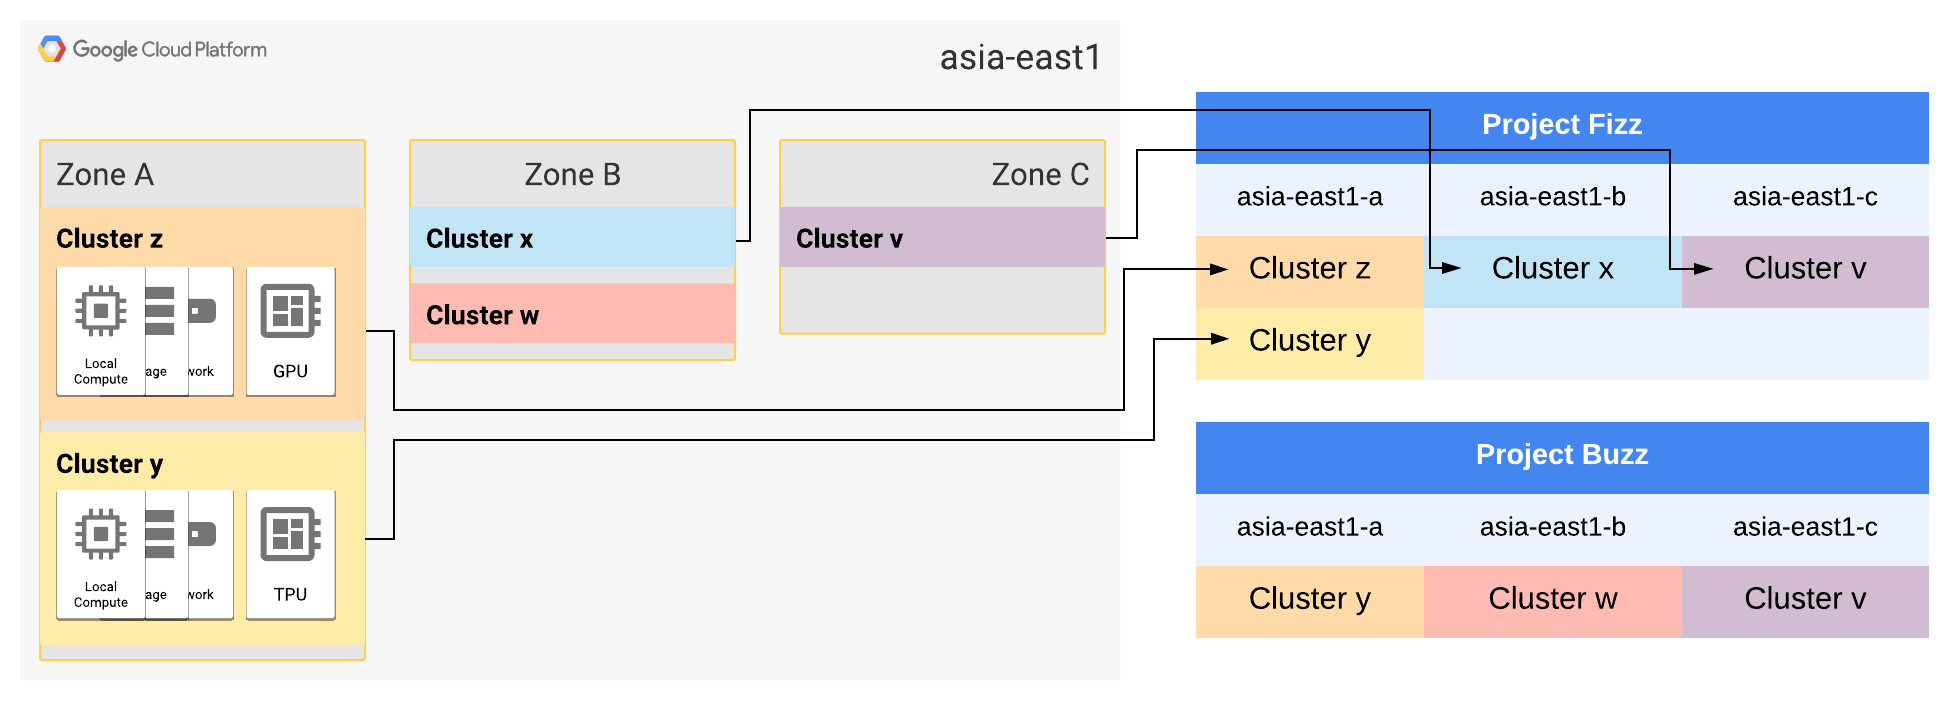 Le zone A e B di asia-east1 sono state ampliate ciascuna in due cluster.